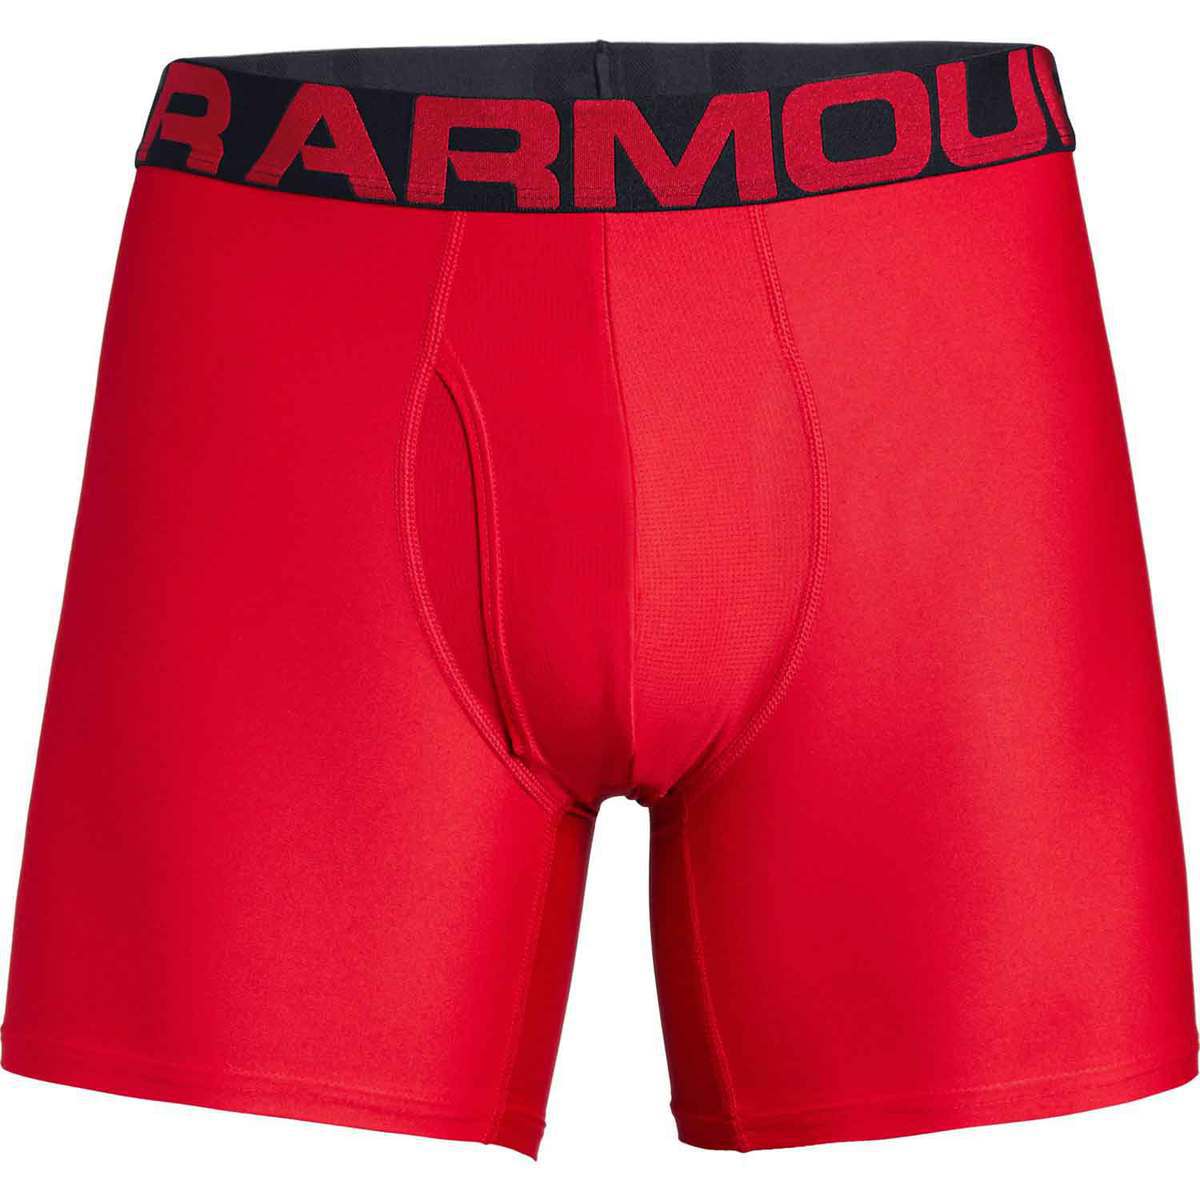 Under Armour Men's Tech Boxerjock Underwear - Red/Black - XL - Red ...